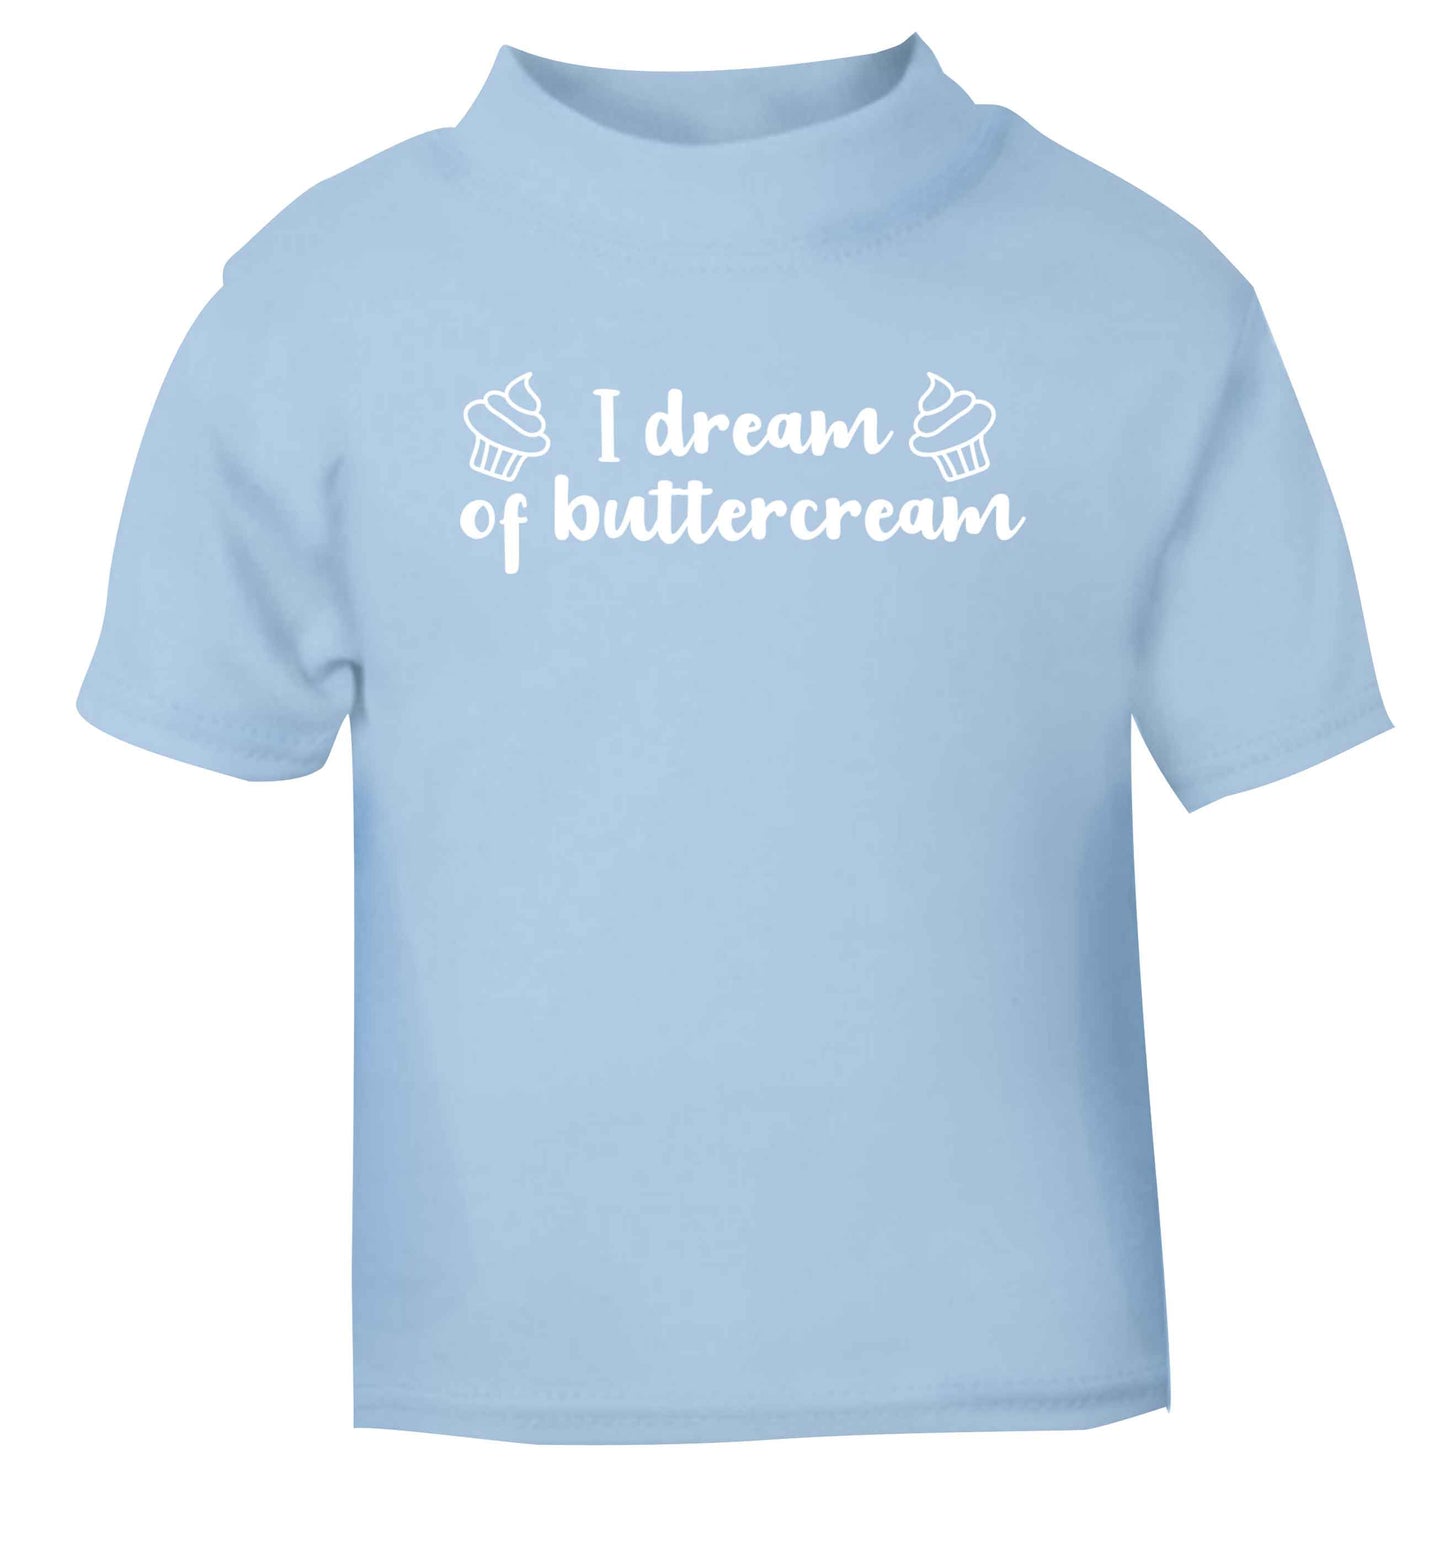 I dream of buttercream light blue Baby Toddler Tshirt 2 Years